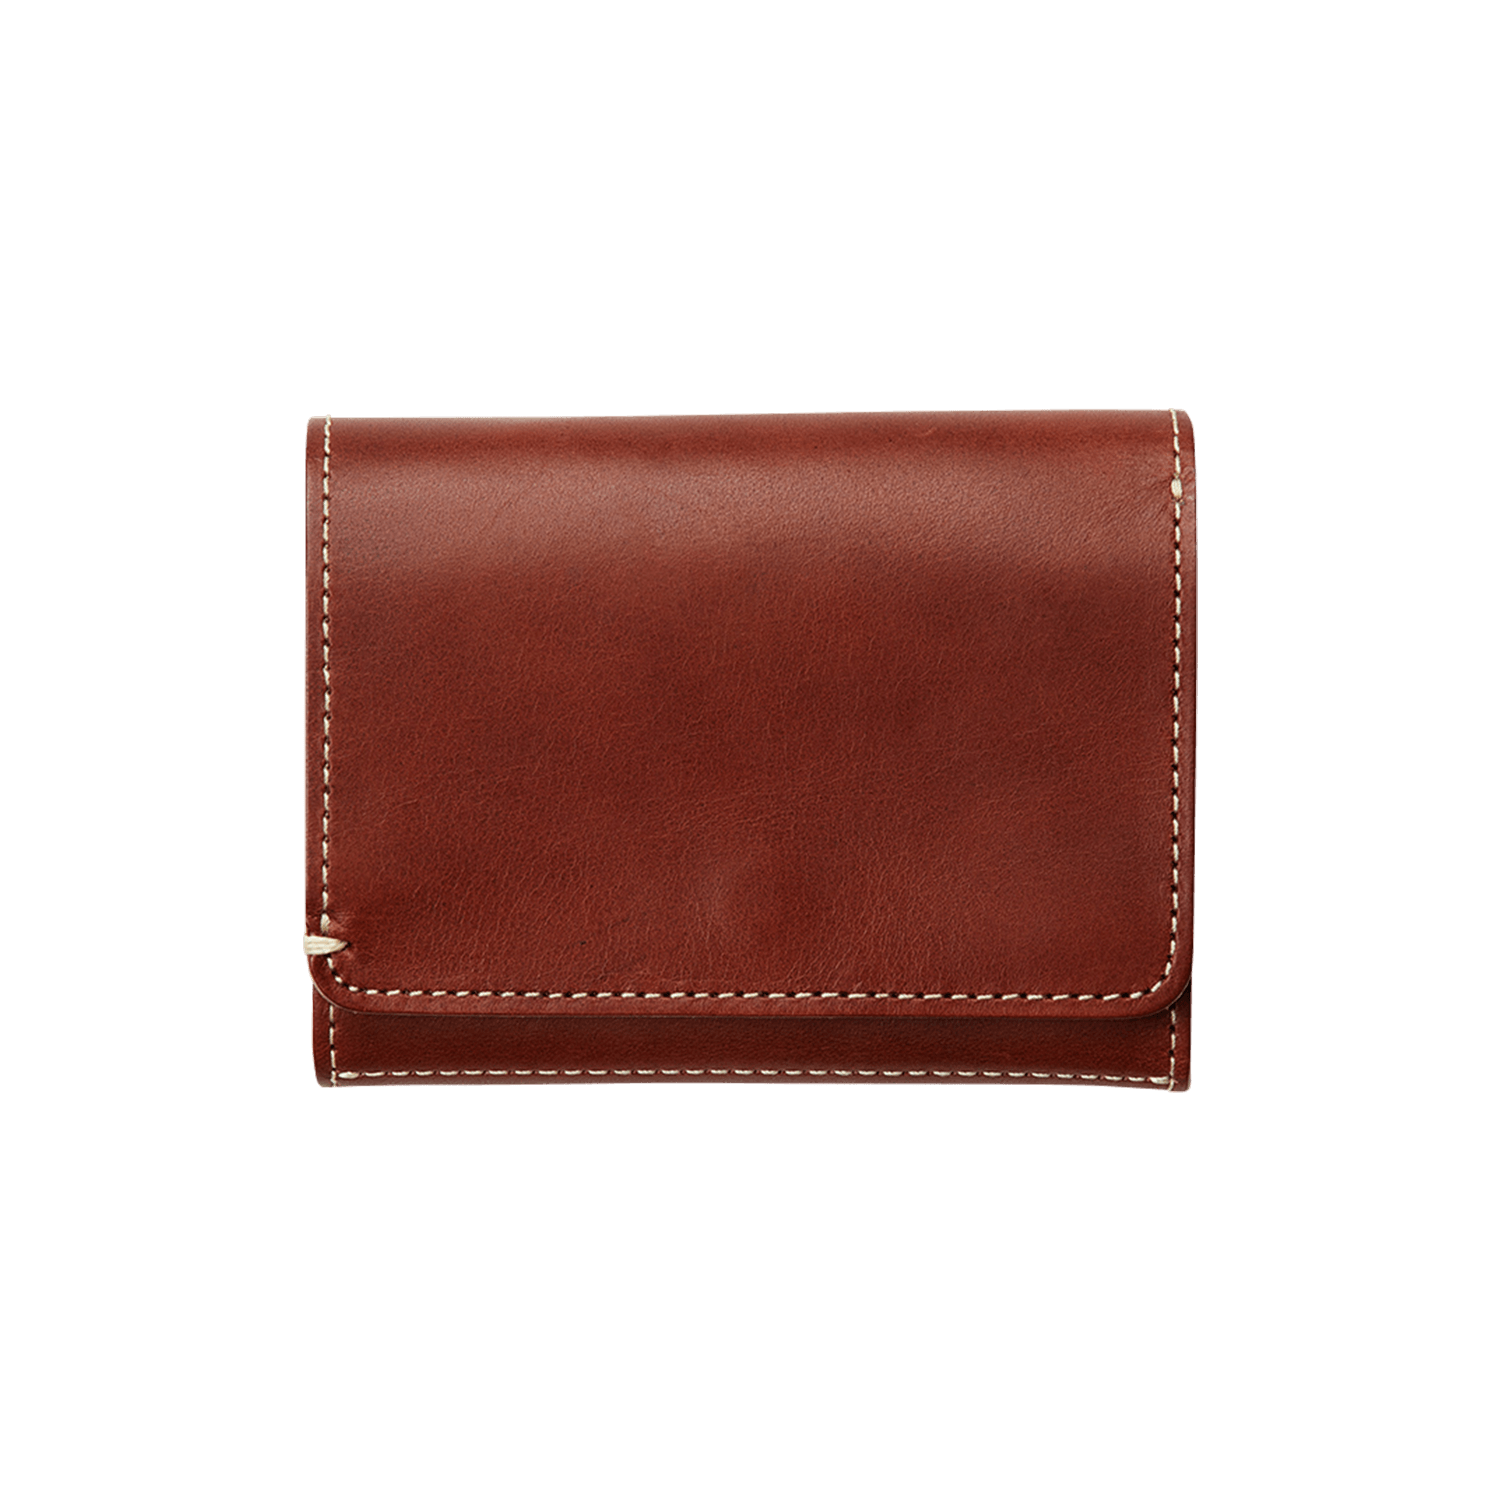 ディアリオ クラッチパース – 二つ折り財布 – 土屋鞄製造所